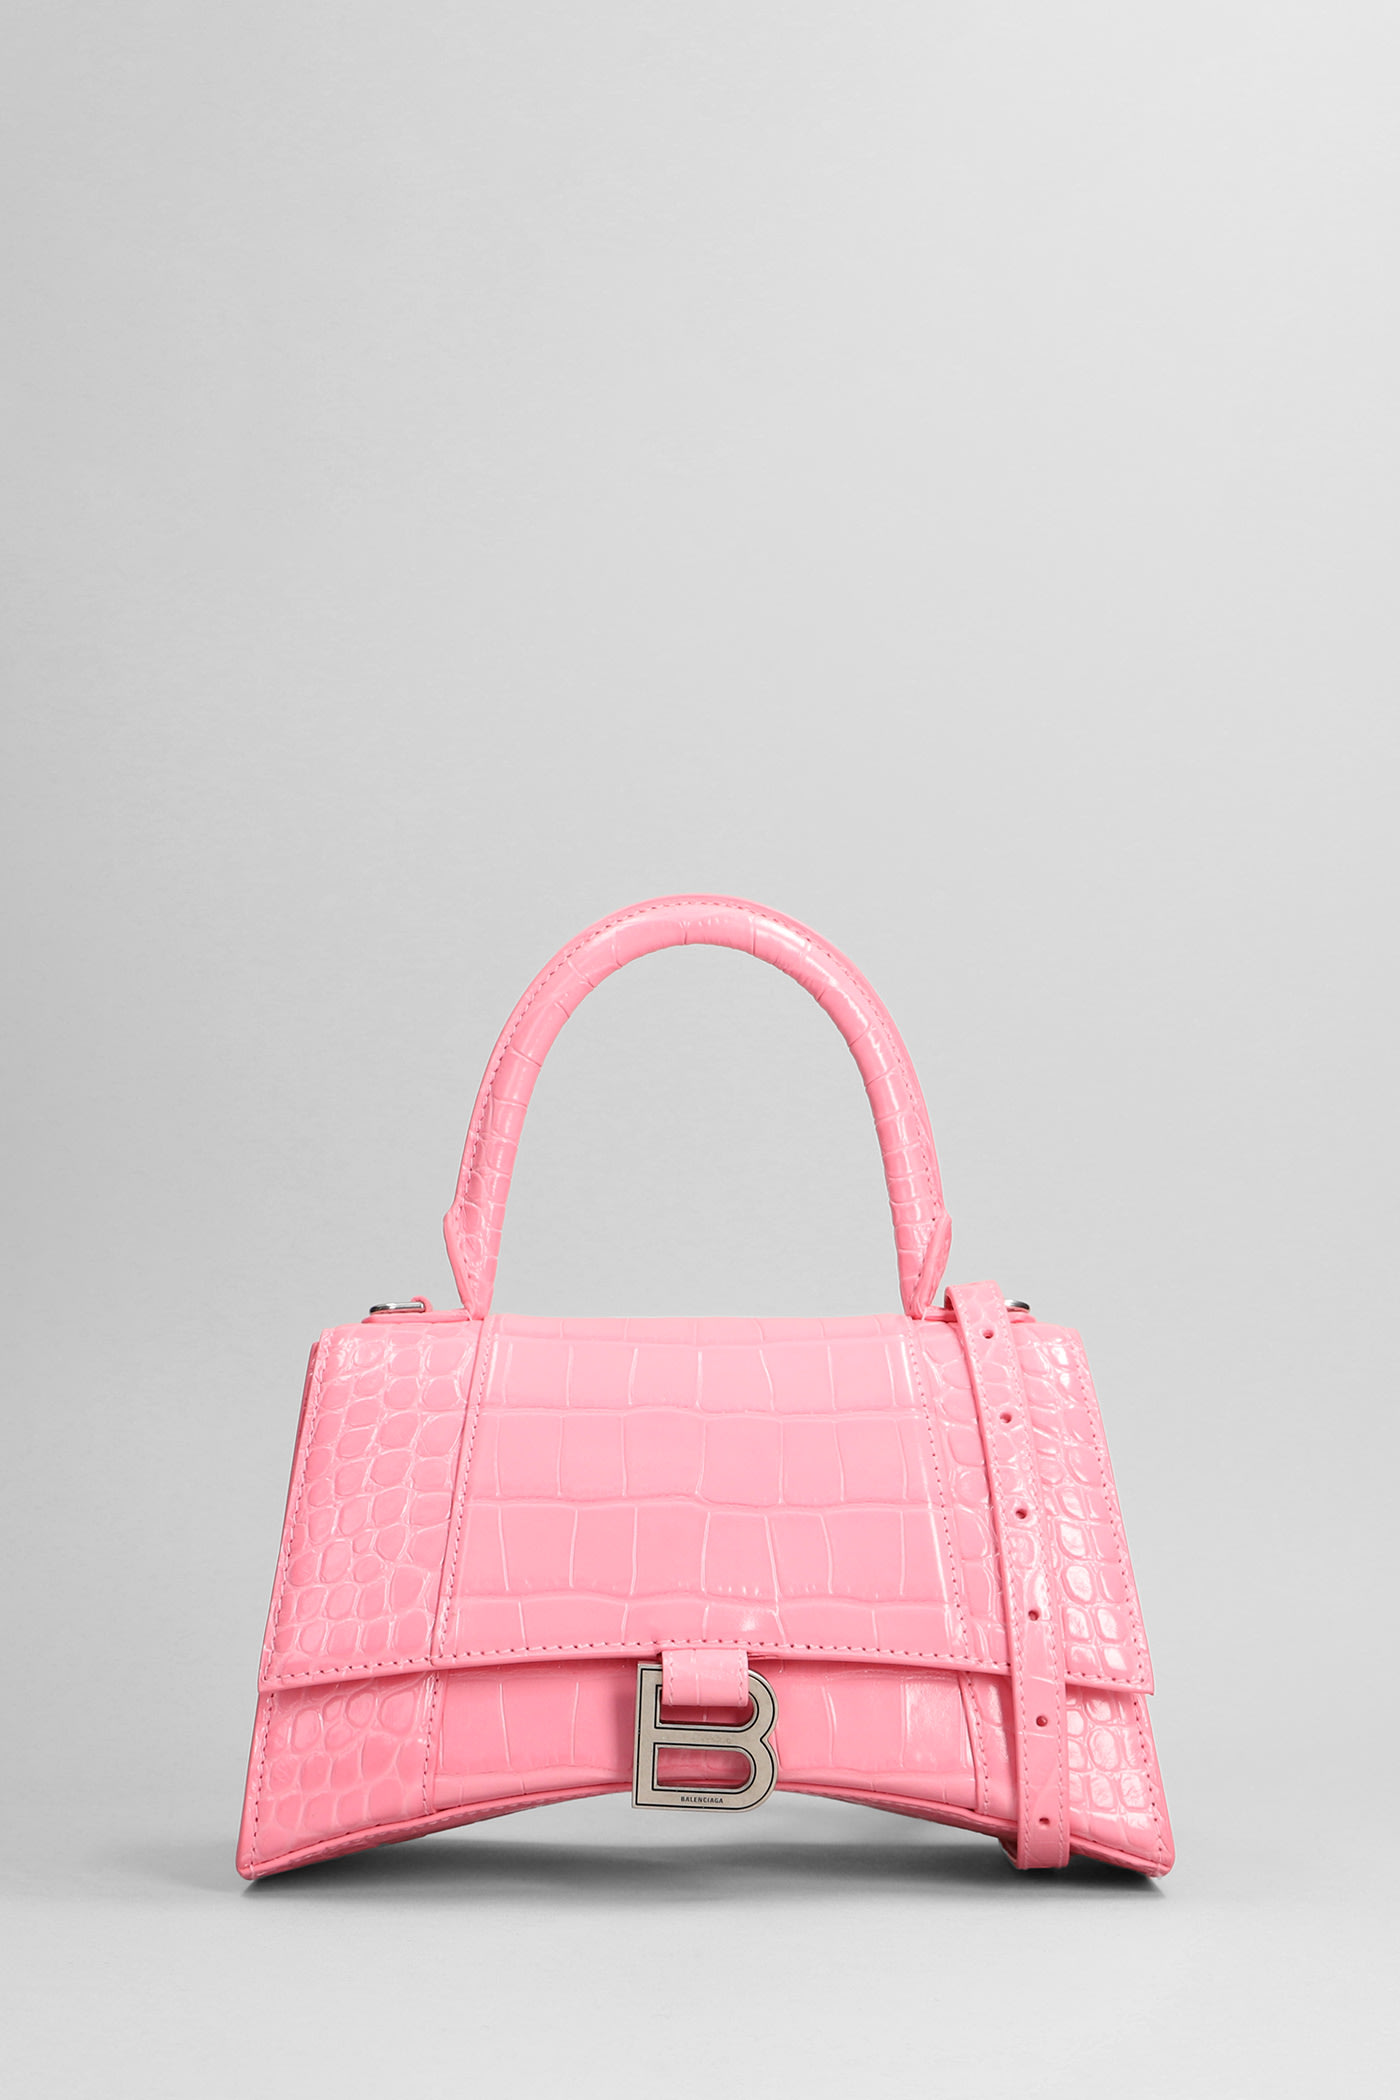 Balenciaga Shoulder Bag In Rose-pink Leather